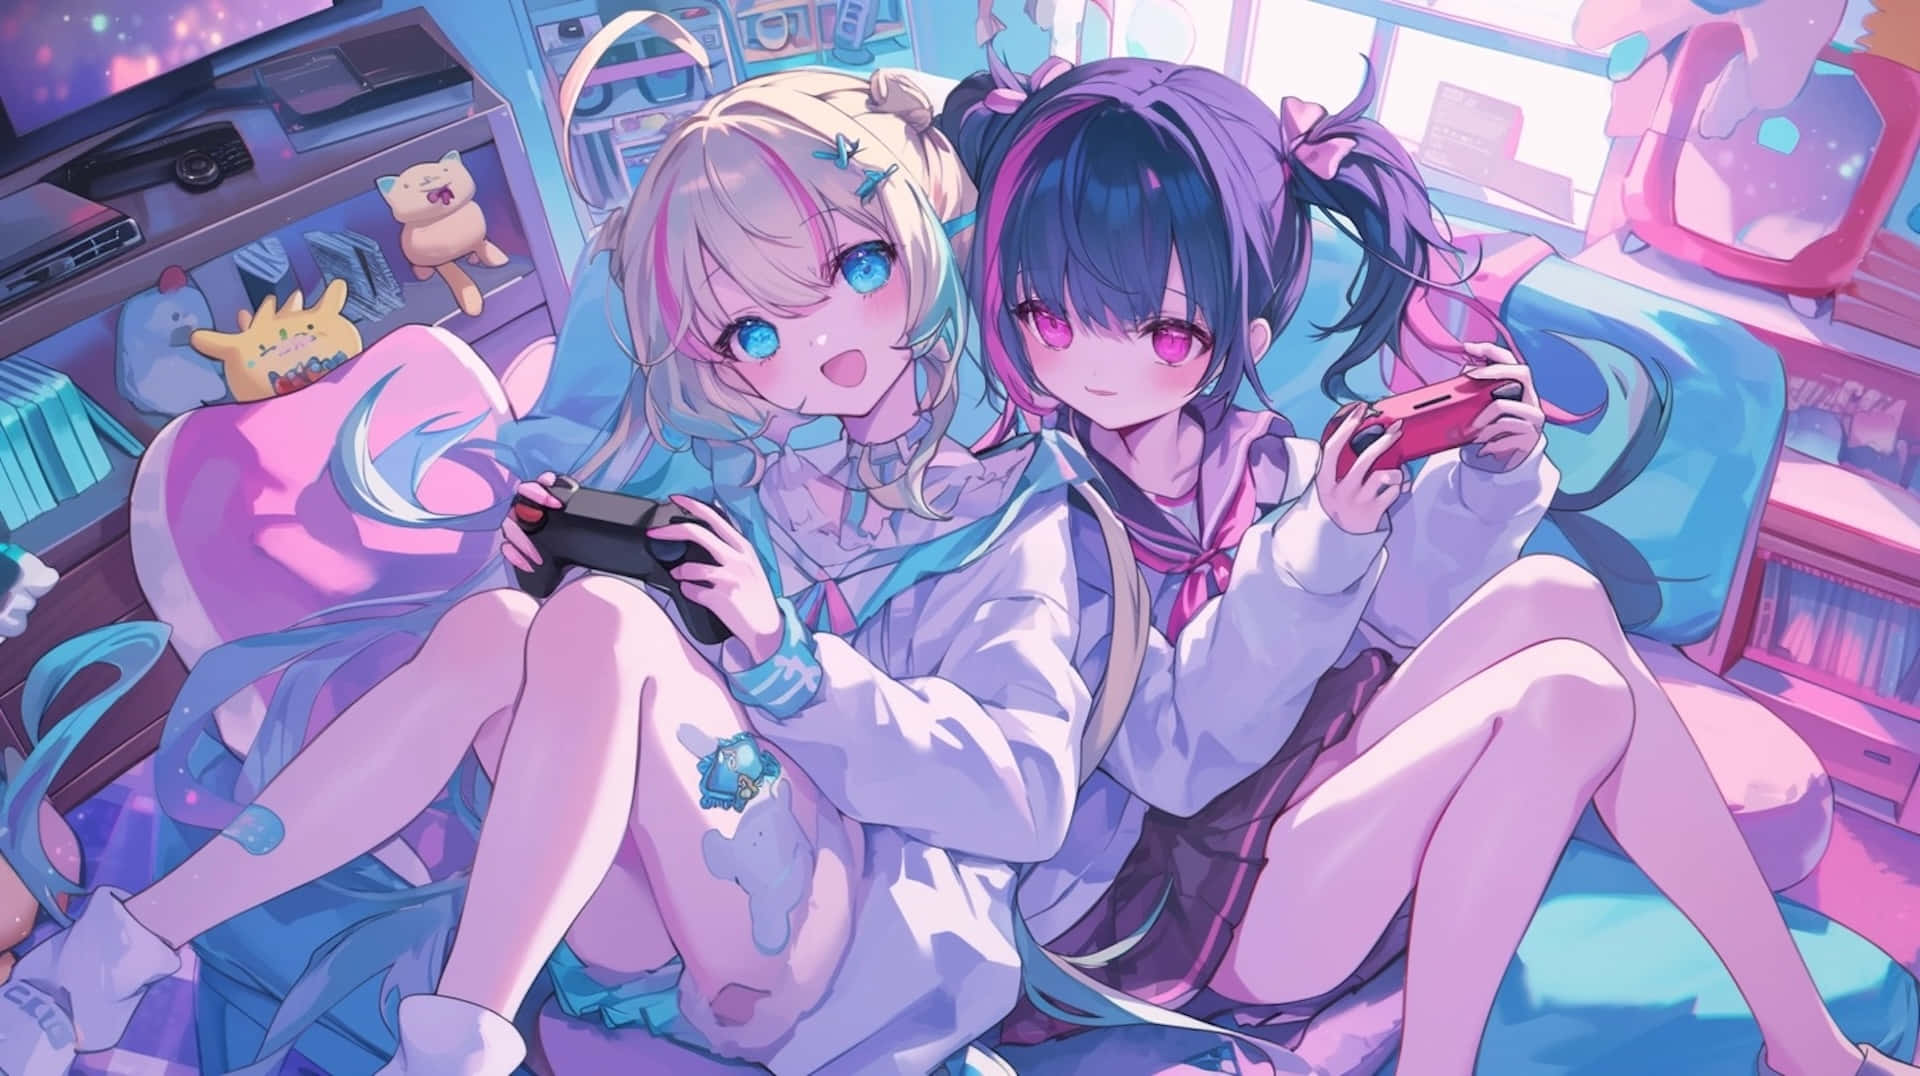 Gamer Girls Anime Artwork Wallpaper